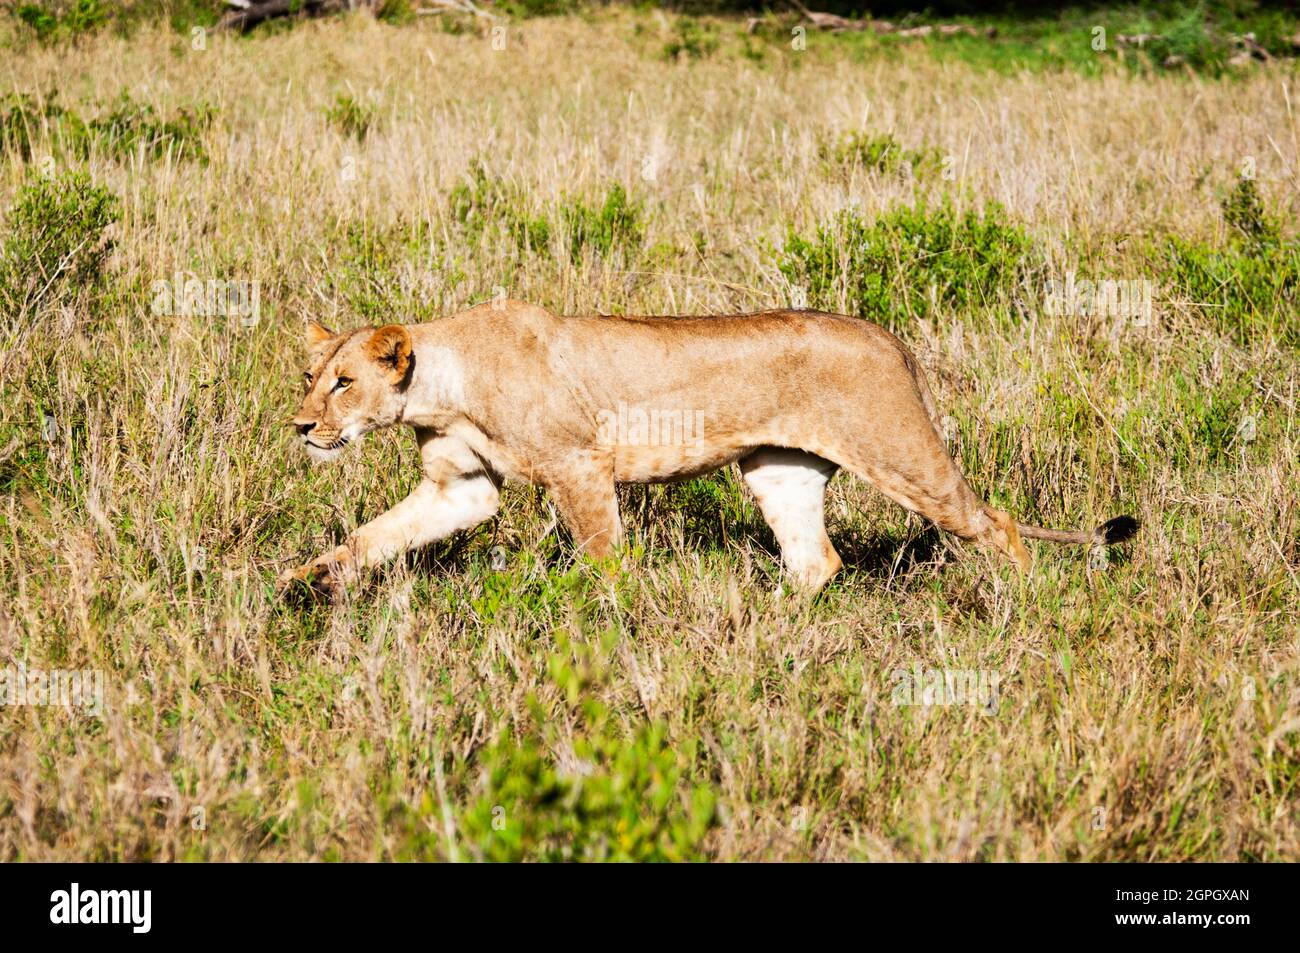 Kenya, parc national de Tsavo West, un jeune lion mâle (Panthera leo) Banque D'Images